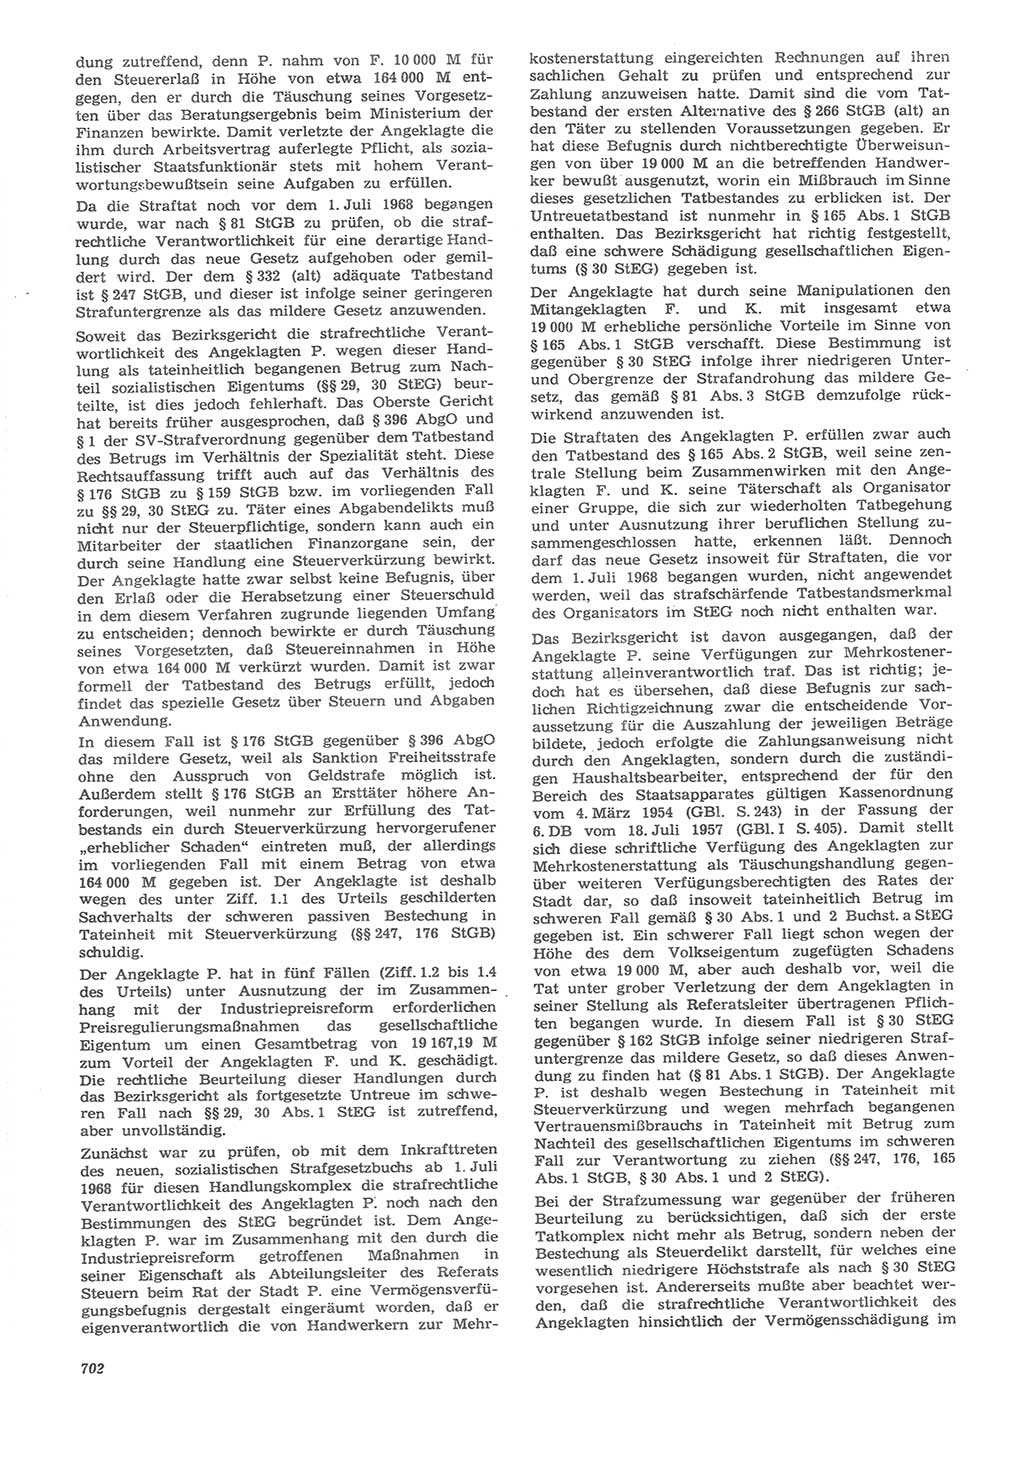 Neue Justiz (NJ), Zeitschrift für Recht und Rechtswissenschaft [Deutsche Demokratische Republik (DDR)], 22. Jahrgang 1968, Seite 702 (NJ DDR 1968, S. 702)